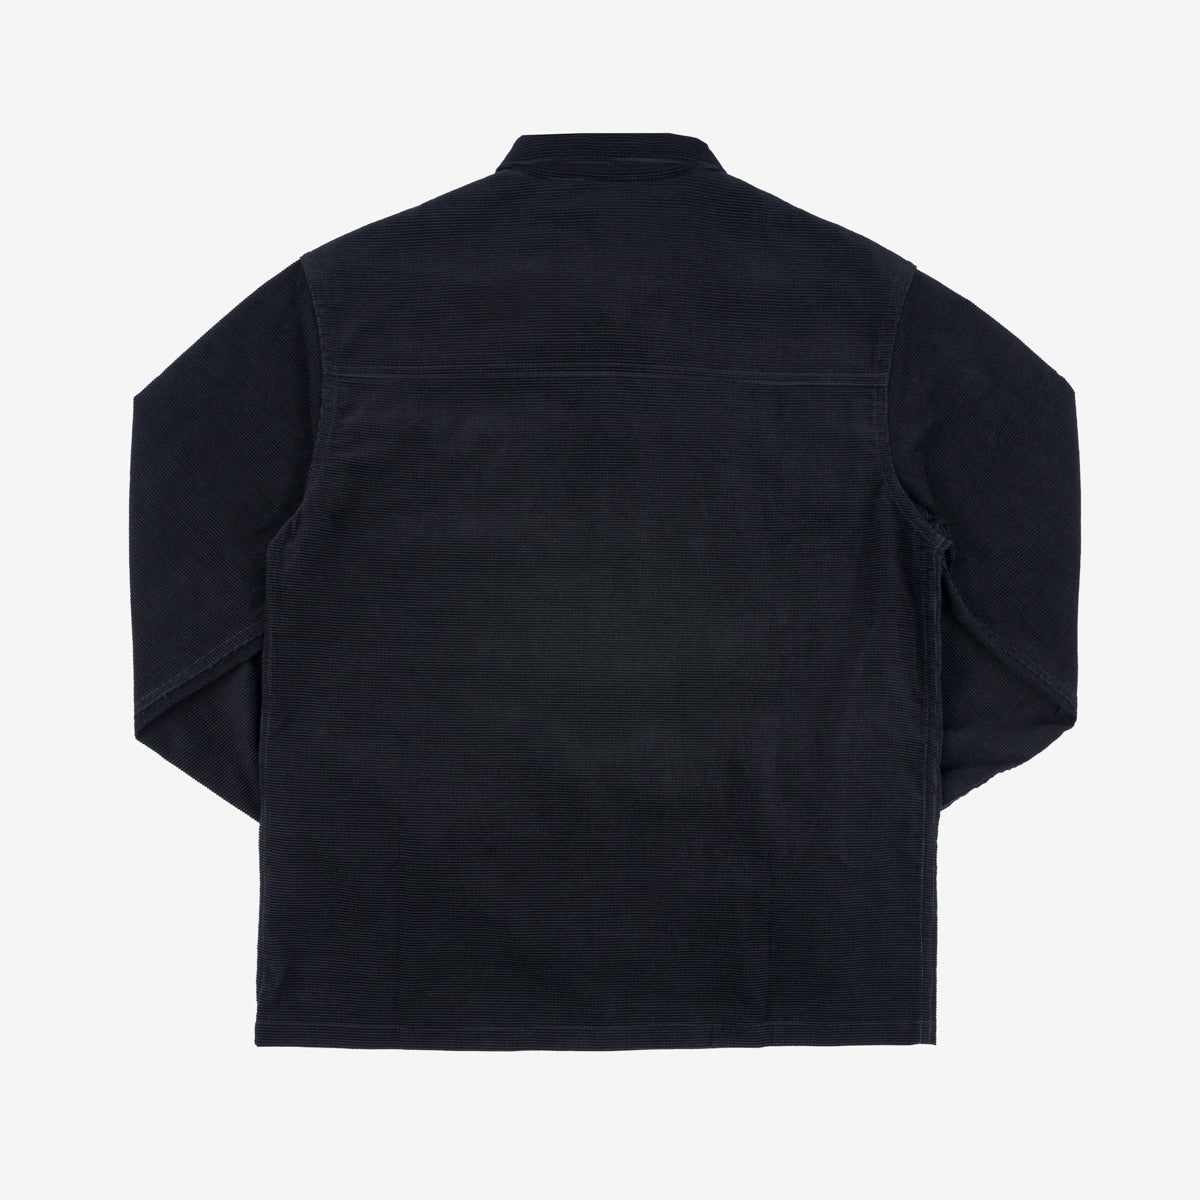 SaturdayTypeFever - Japanese Corduroy Shirt - Black